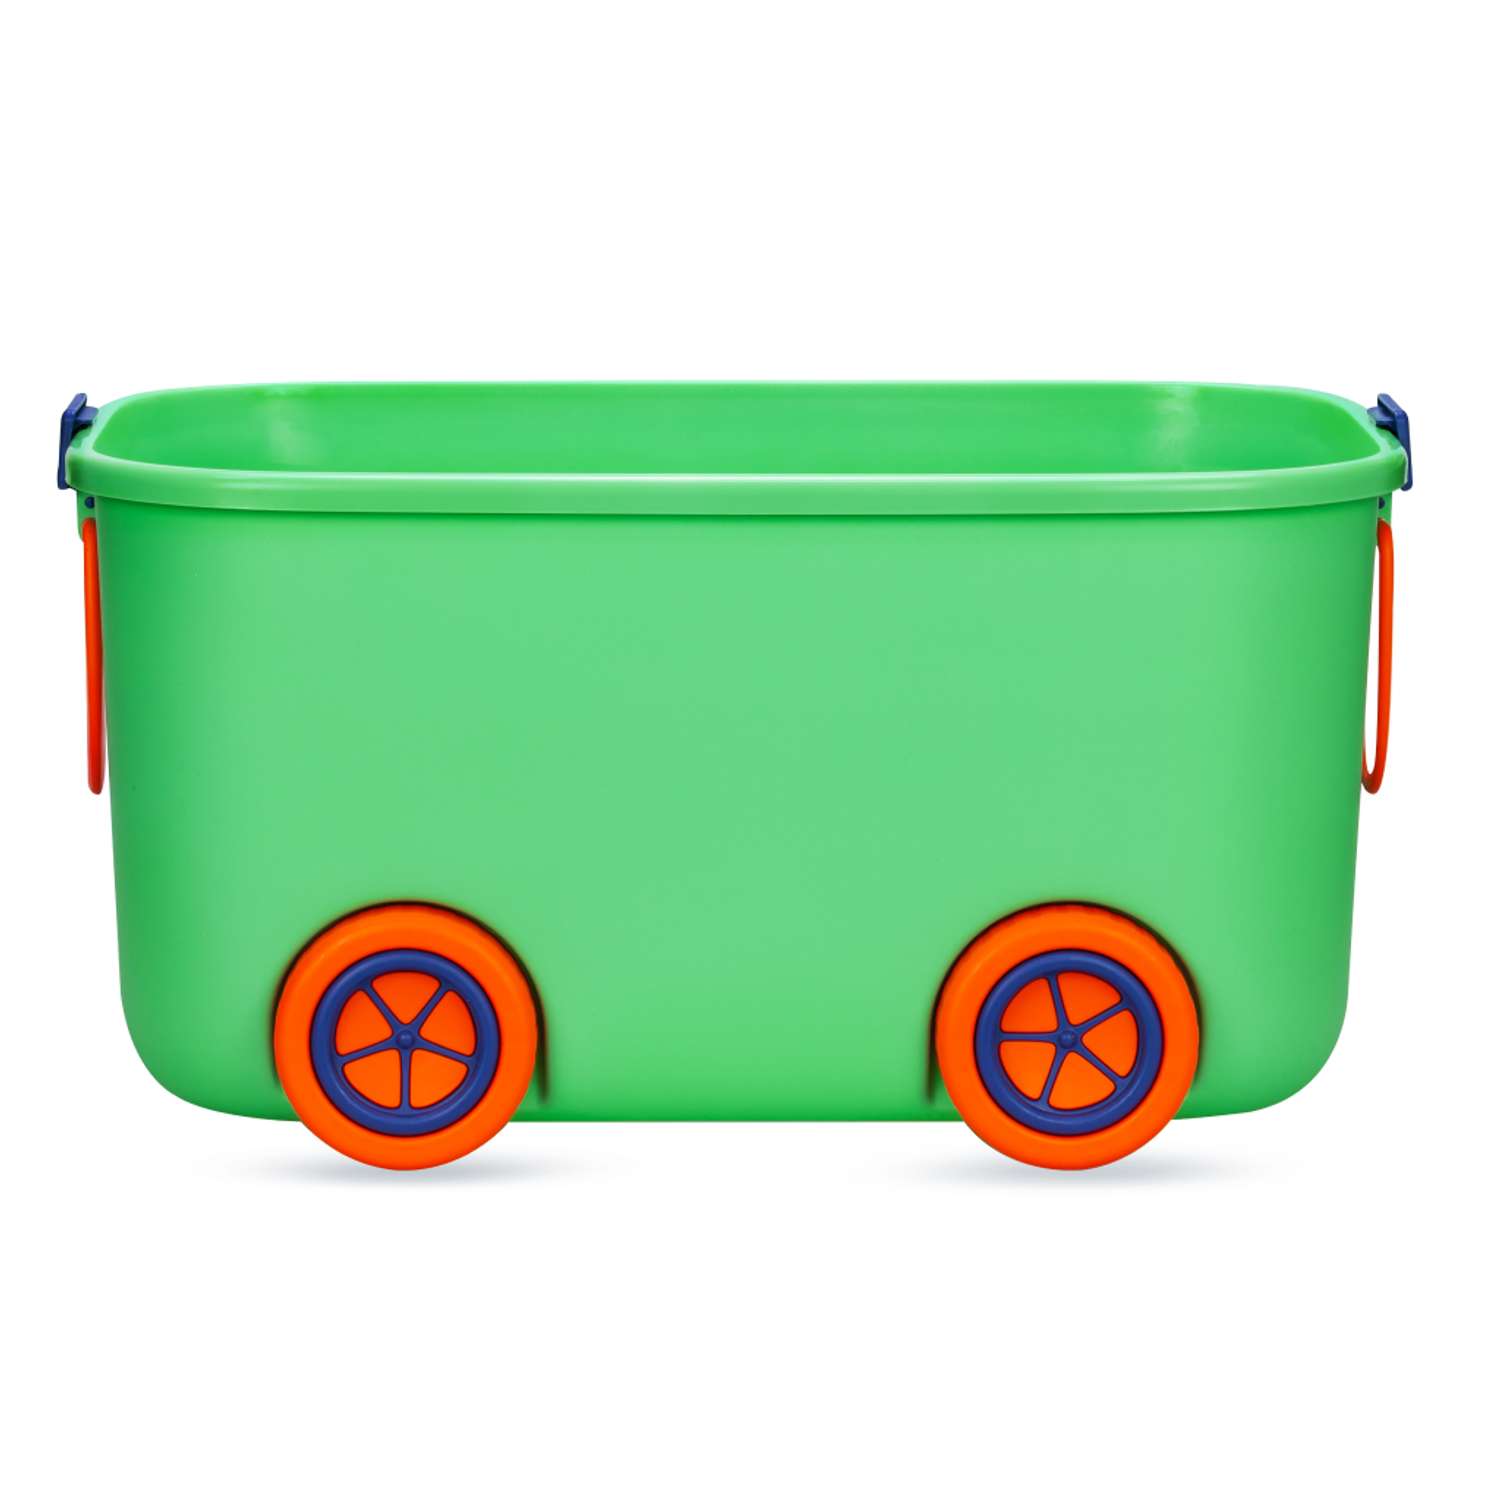 Ящик для хранения игрушек Solmax контейнер на колесиках 54х41.5х38 см зеленый - фото 8